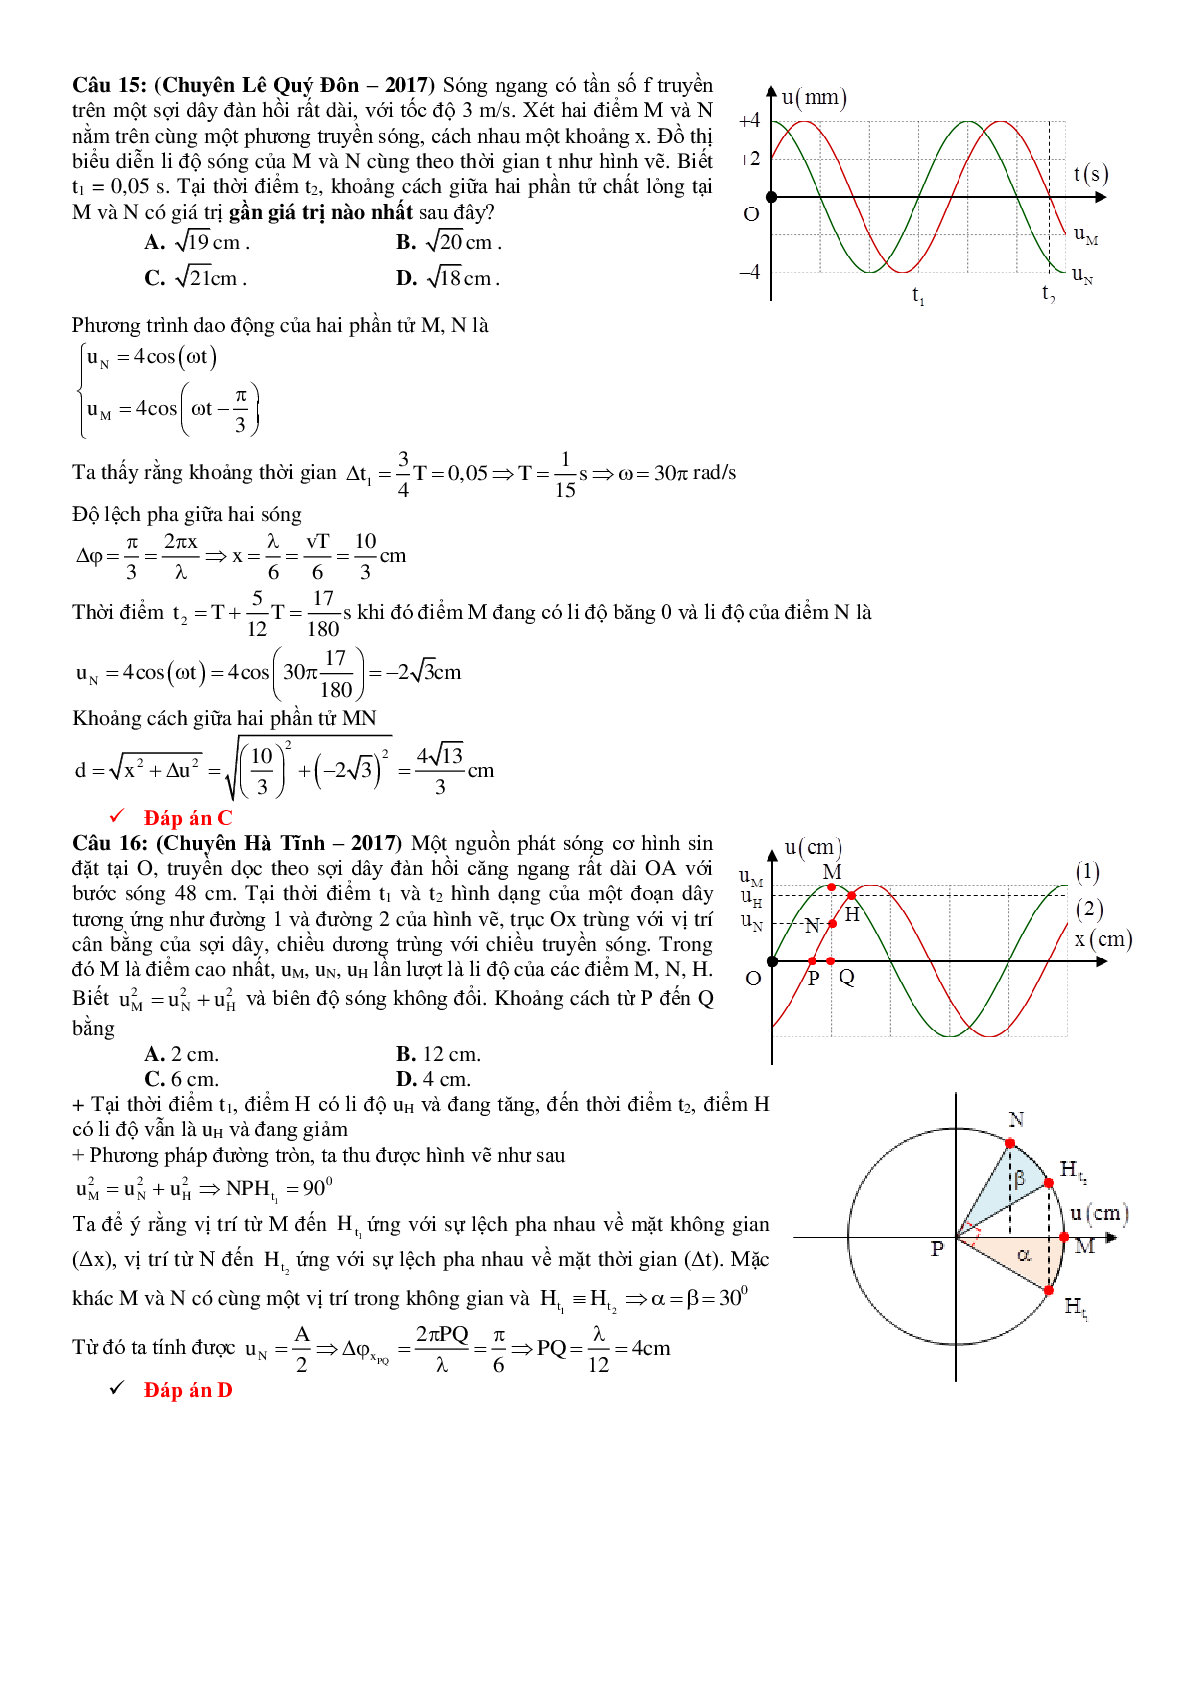 Lý thuyết, bài tập Đồ thị sóng cơ có đáp án (trang 7)